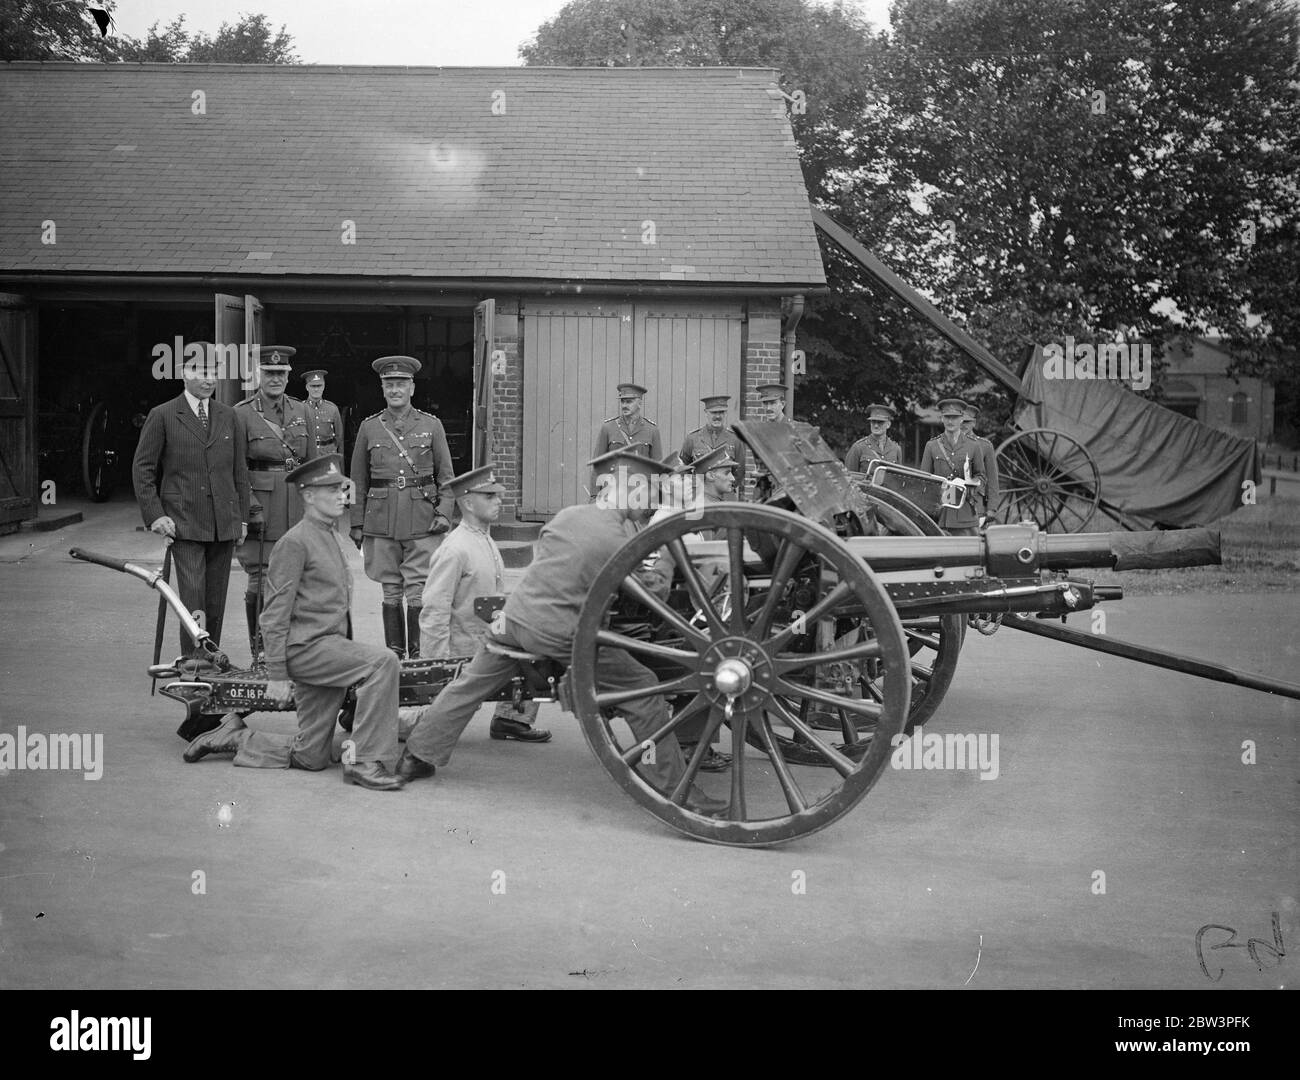 Earl of Athlone und Chief of Imperial General Staff besuchen Royal Artillery Depot in Woolwich . Der Earl of Athlone und Feldmarschall Sir Archibald Montgomery Massingberd beobachten ein Gewehrteam. 19 Juli 1935 Stockfoto